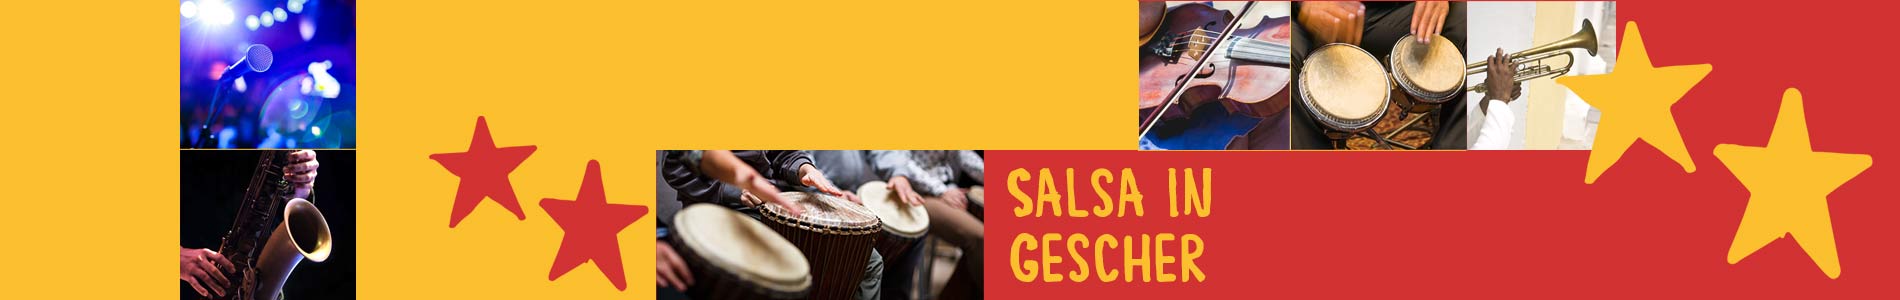 Salsa in Gescher – Salsa lernen und tanzen, Tanzkurse, Partys, Veranstaltungen